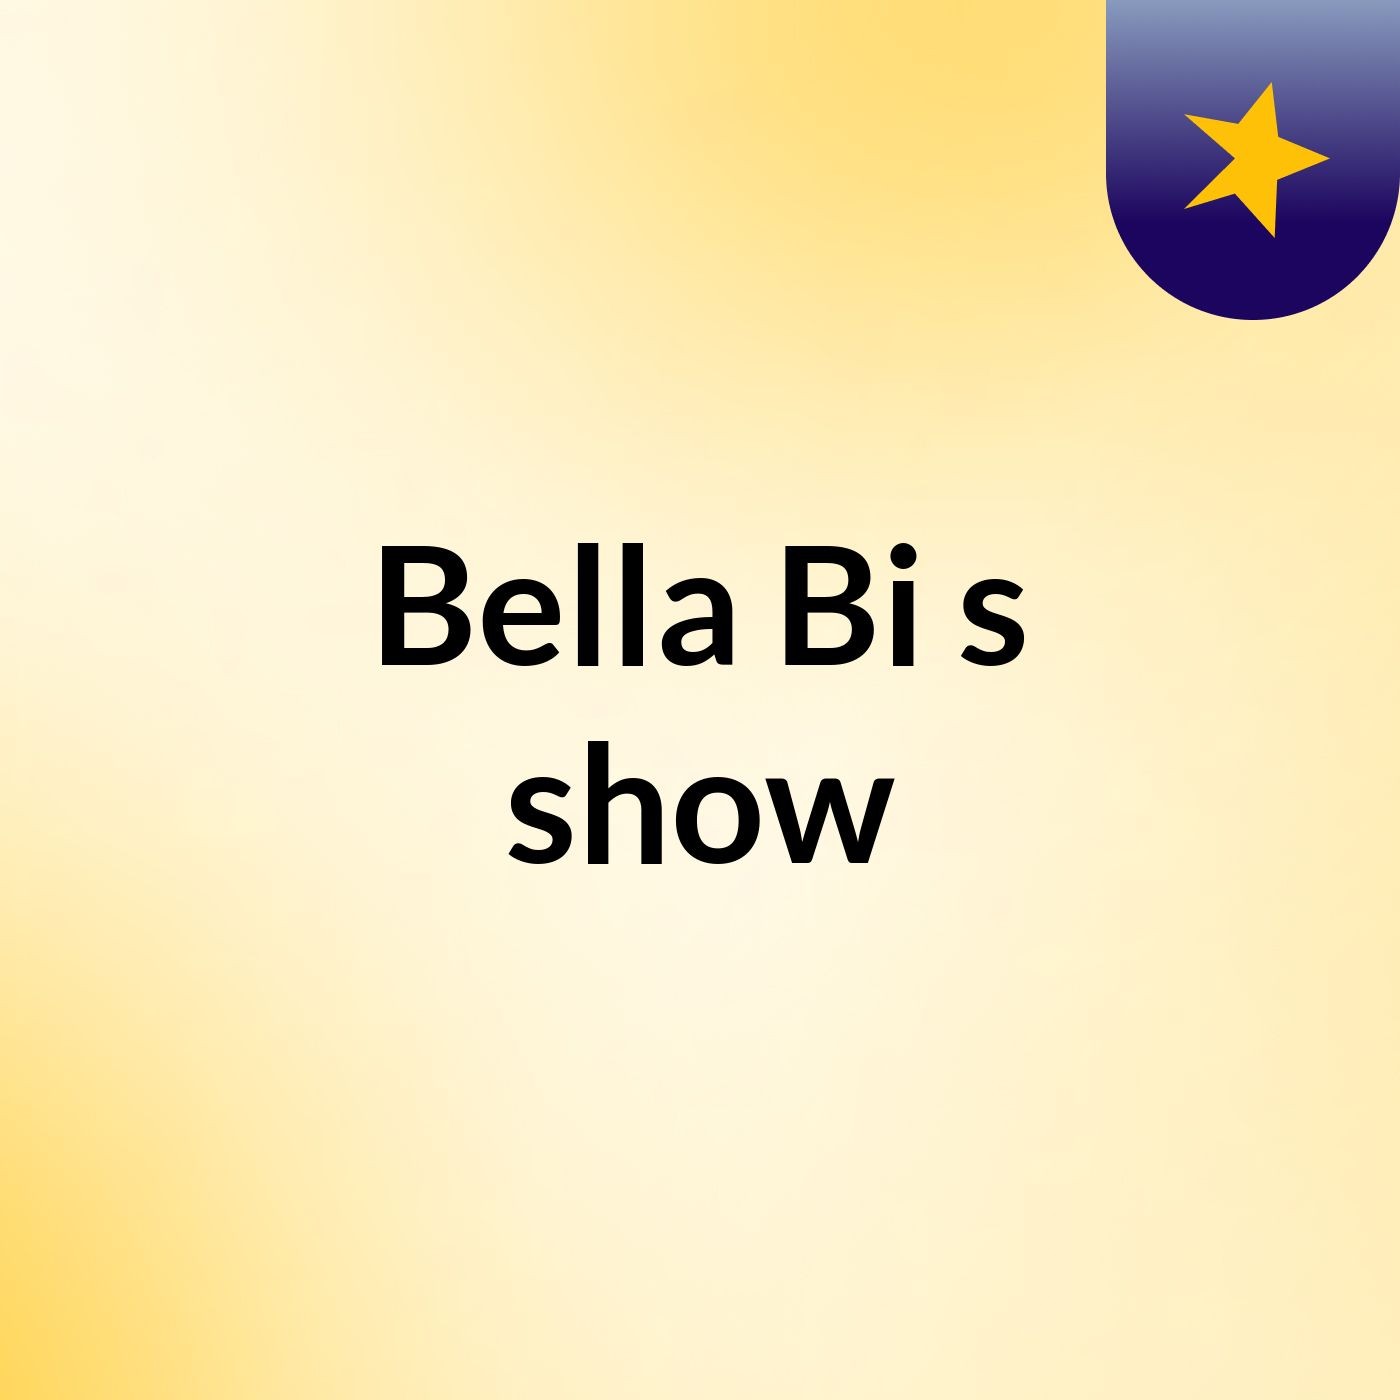 Bella Bi's show